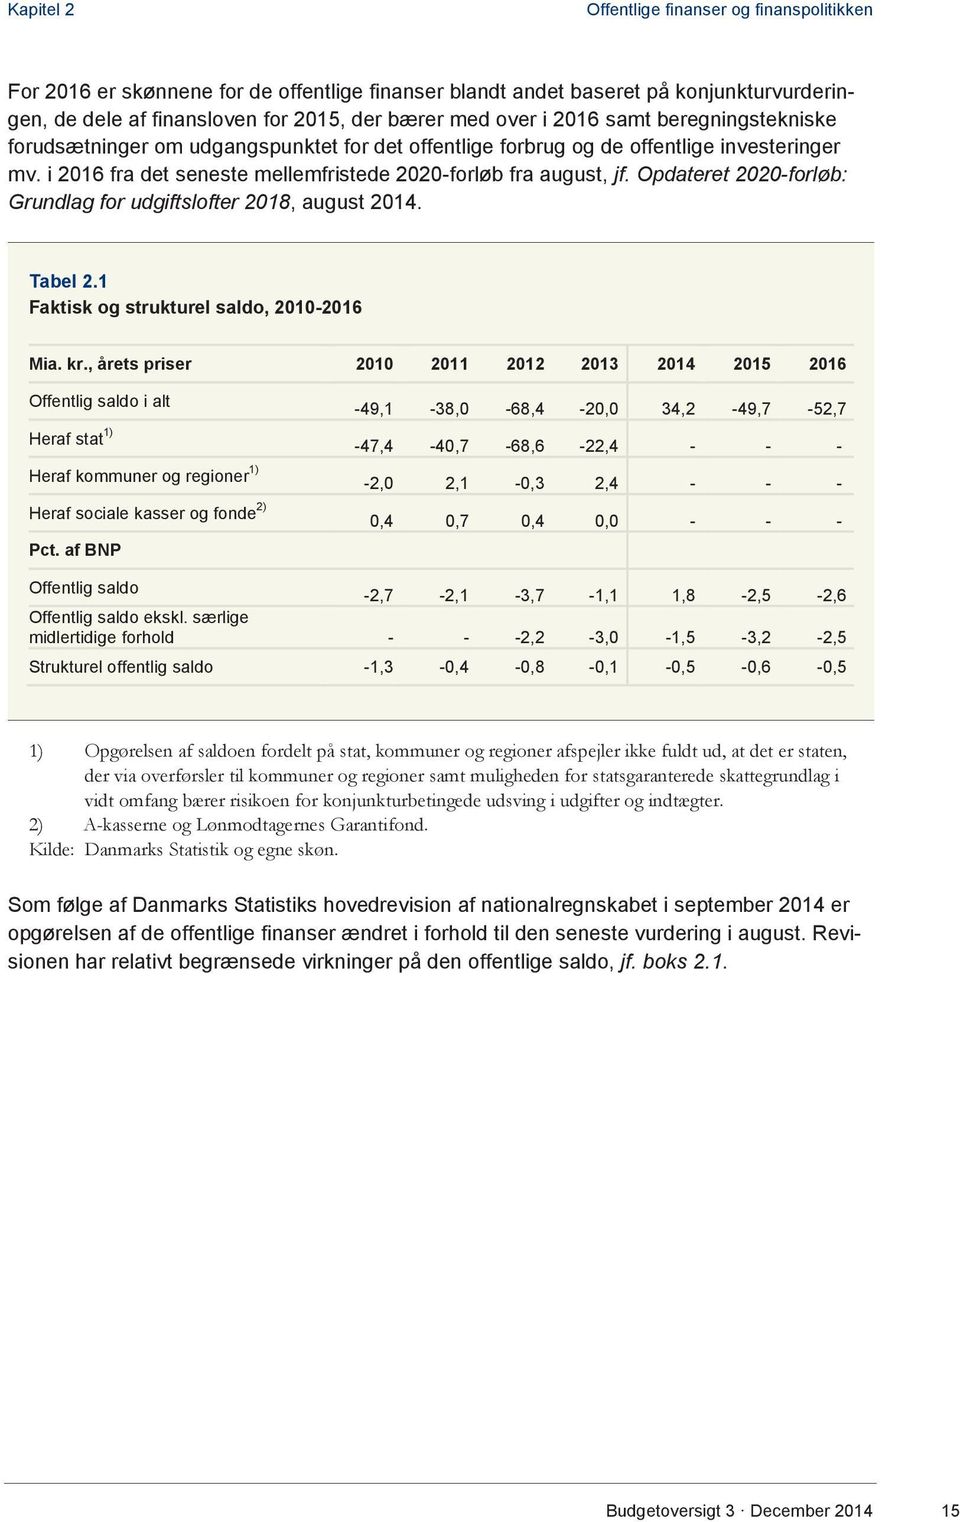 Opdateret 2020-forløb: Grundlag for udgiftslofter 2018, august 2014. Tabel 2.1 Faktisk og strukturel saldo, 2010-2016 Mia. kr.